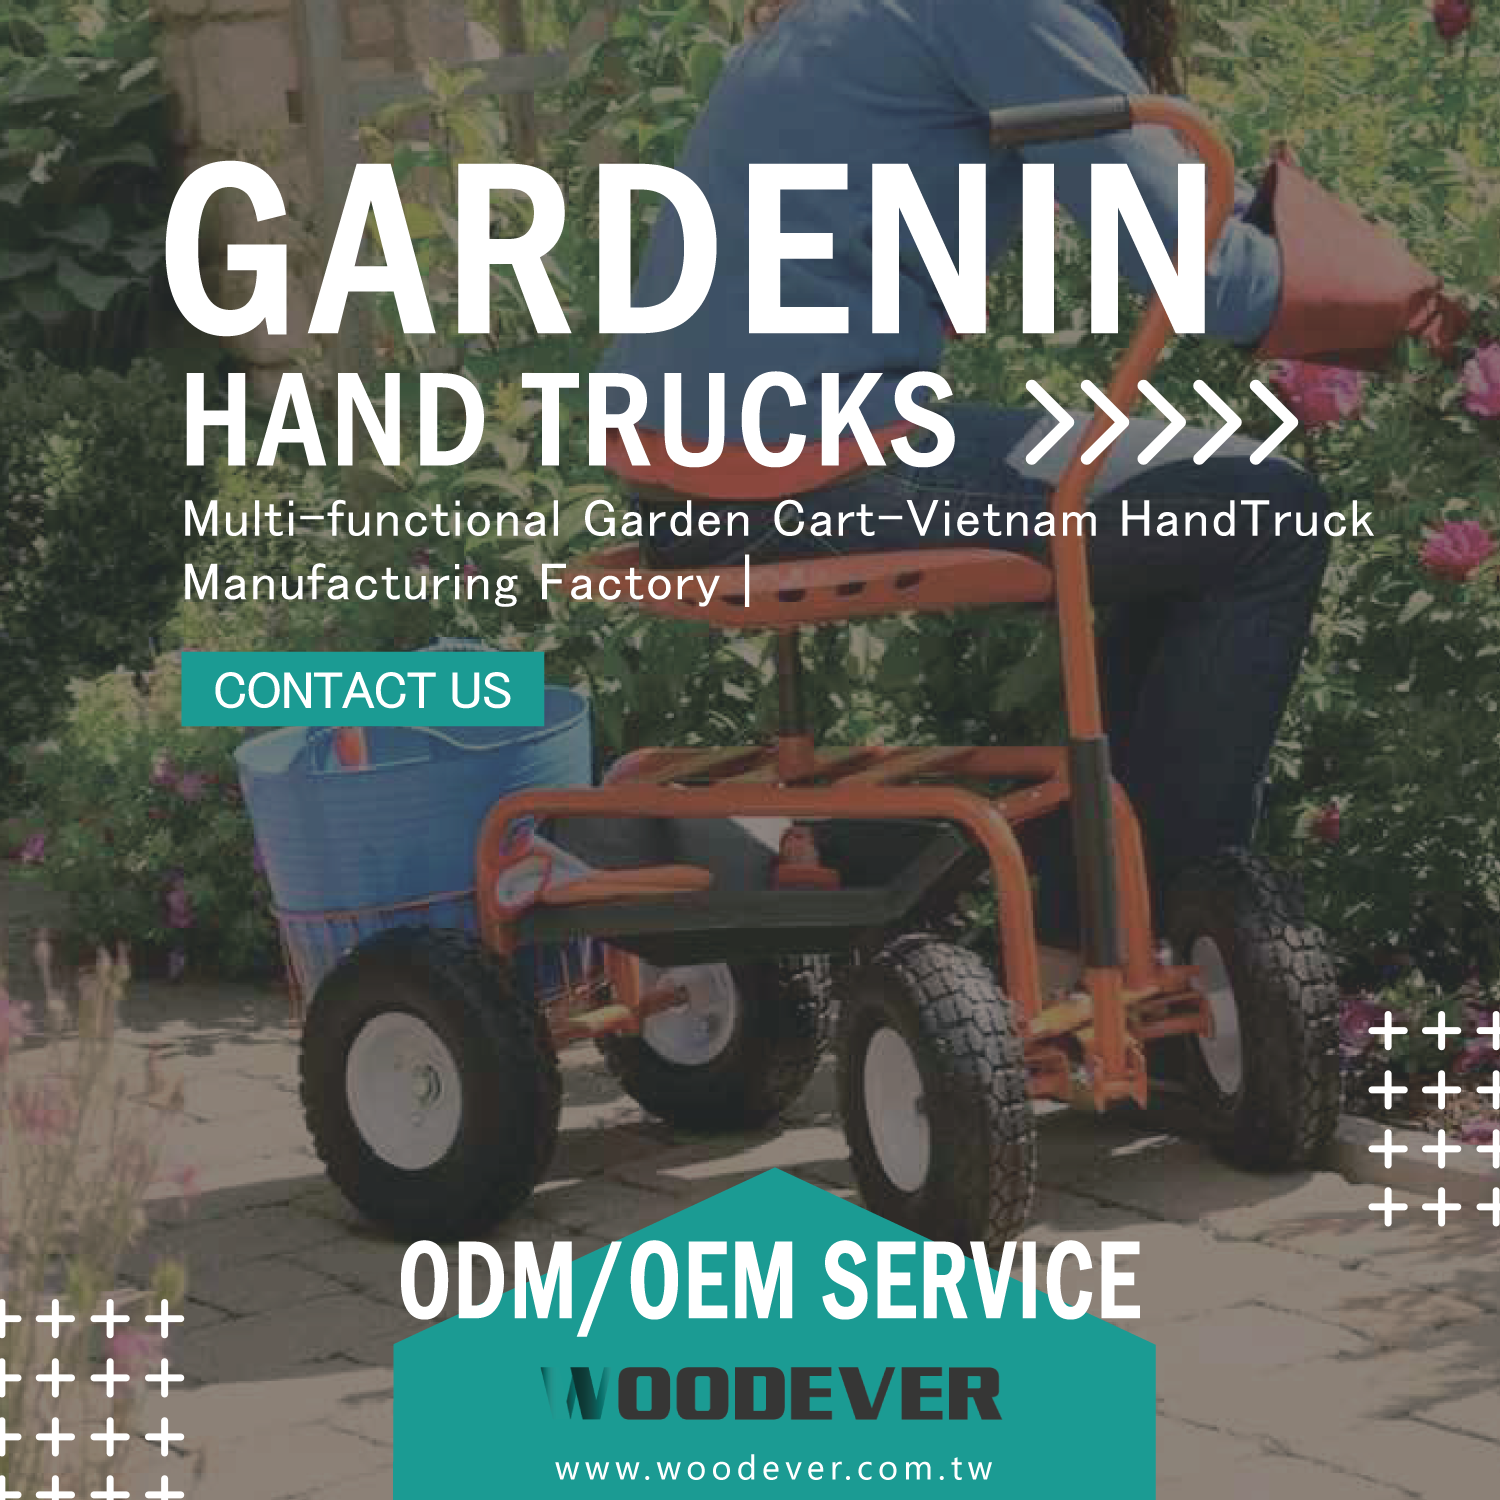 WOODEVER Vietnam Trolley Handtruck Manufacturing & Wholesale Factory bietet brandneue Gartenkarrenstile, hochflexible maßgeschneiderte OEM & ODM globale One-Stop-B2B-Dienstleistungen und bietet die besten Handkarrenlösungen für globale Kunden.